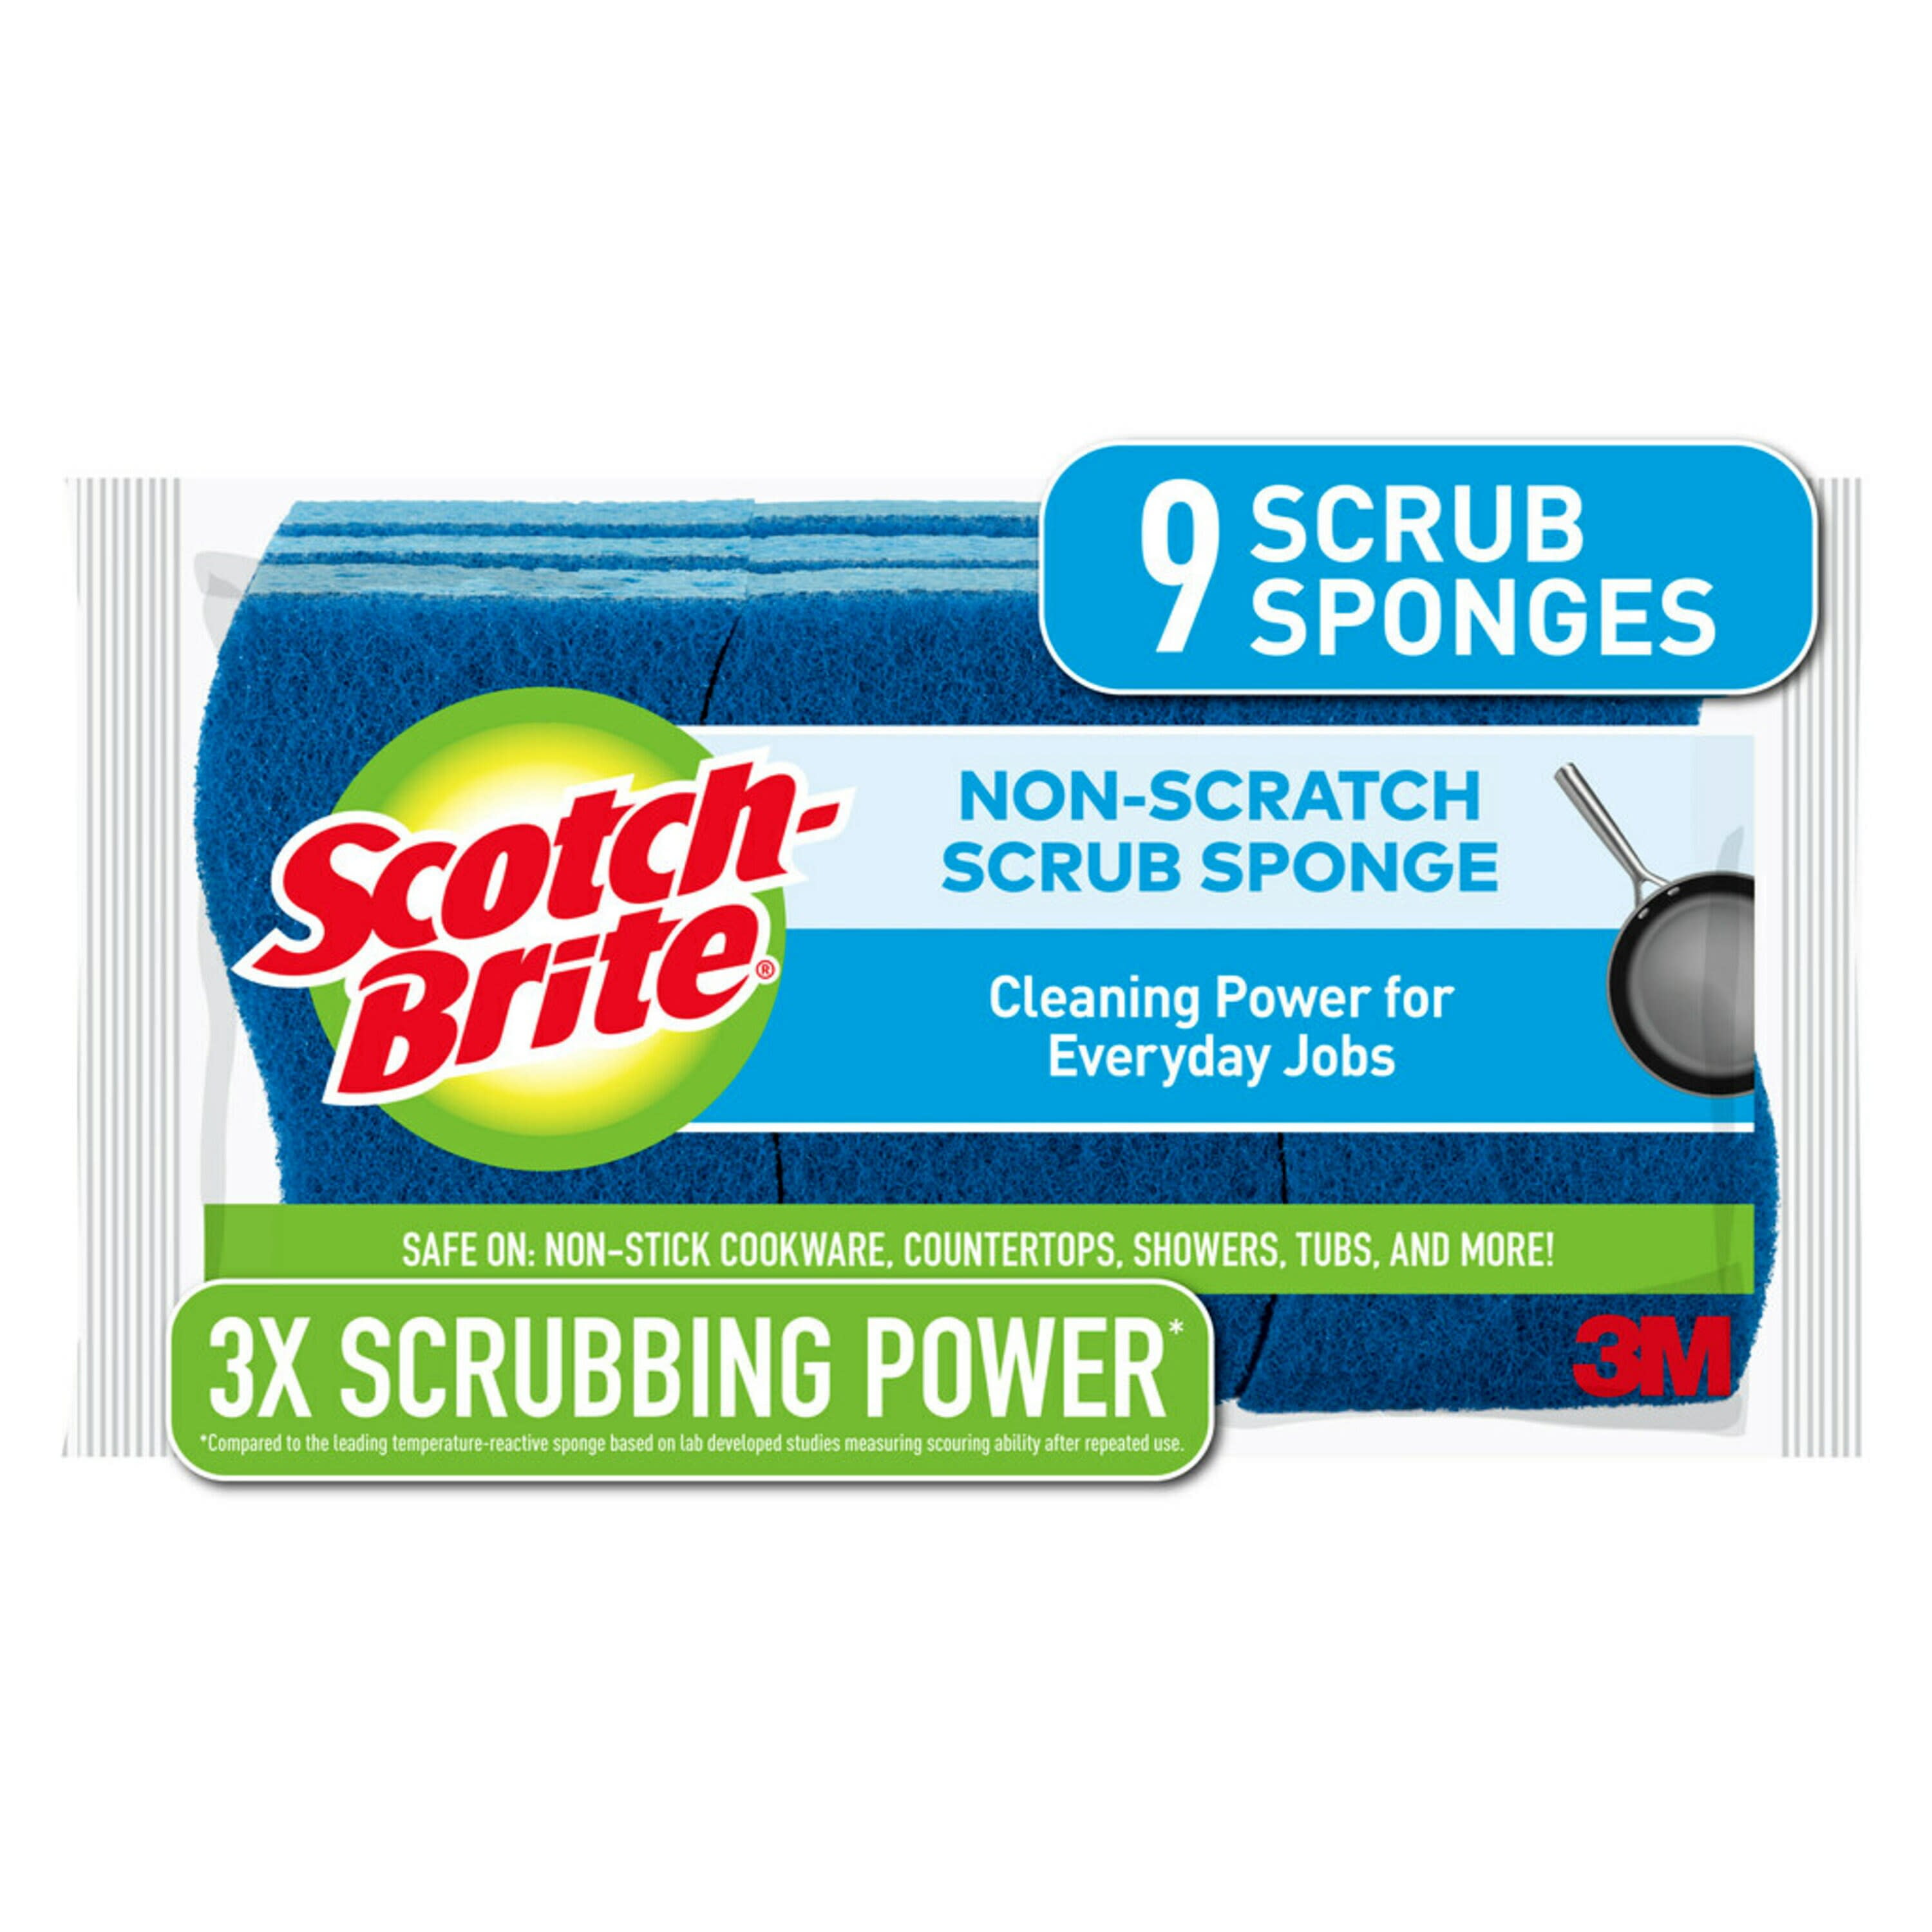 Scotch-Brite Non-Scratch Scrub Sponges, 9 Scrubbing Sponges